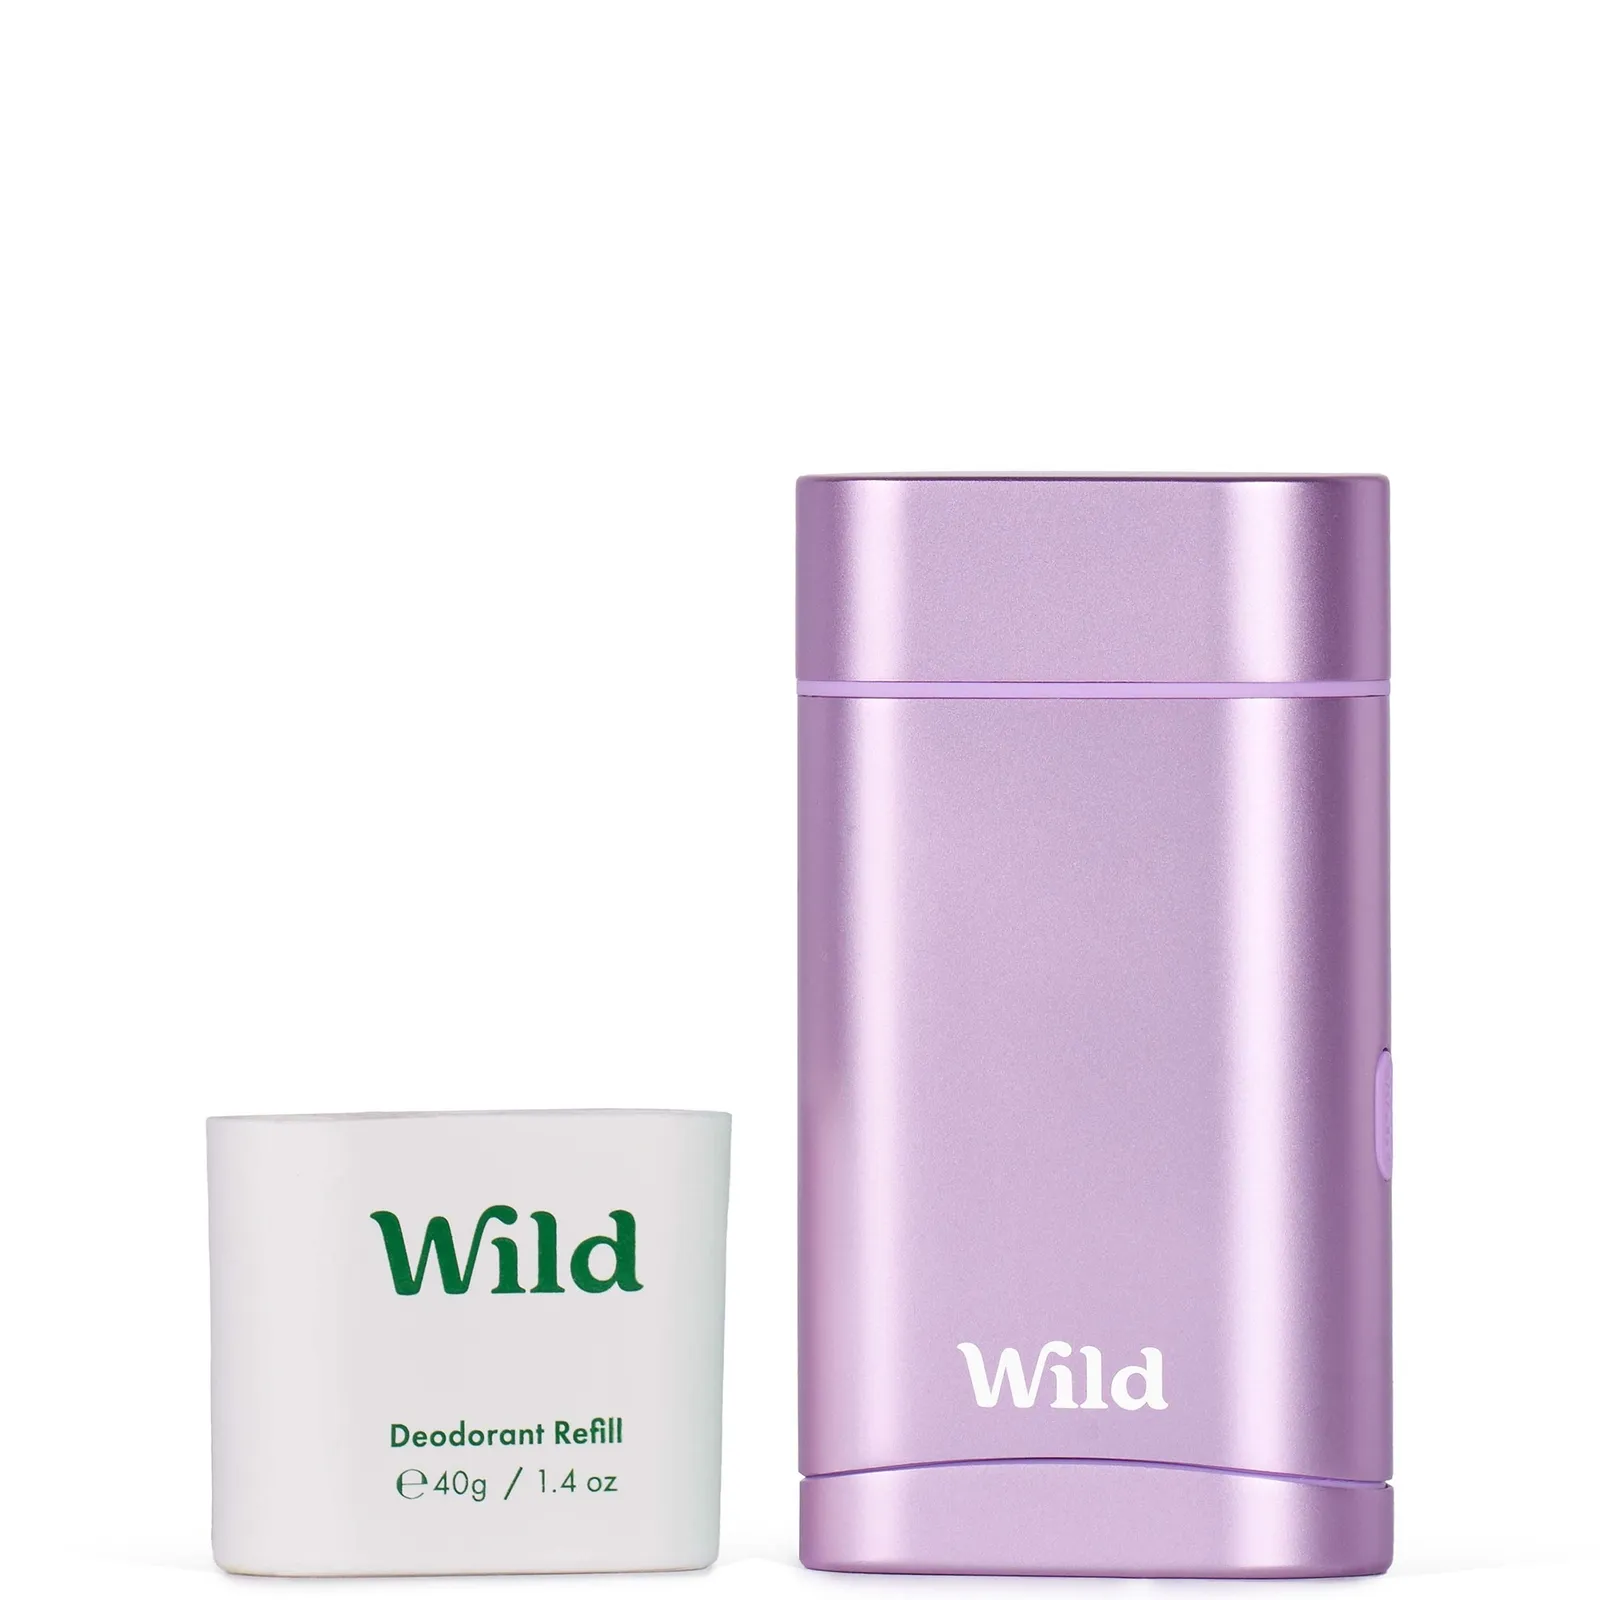  Coconut and Vanilla Deodorant in Purple Case 40g